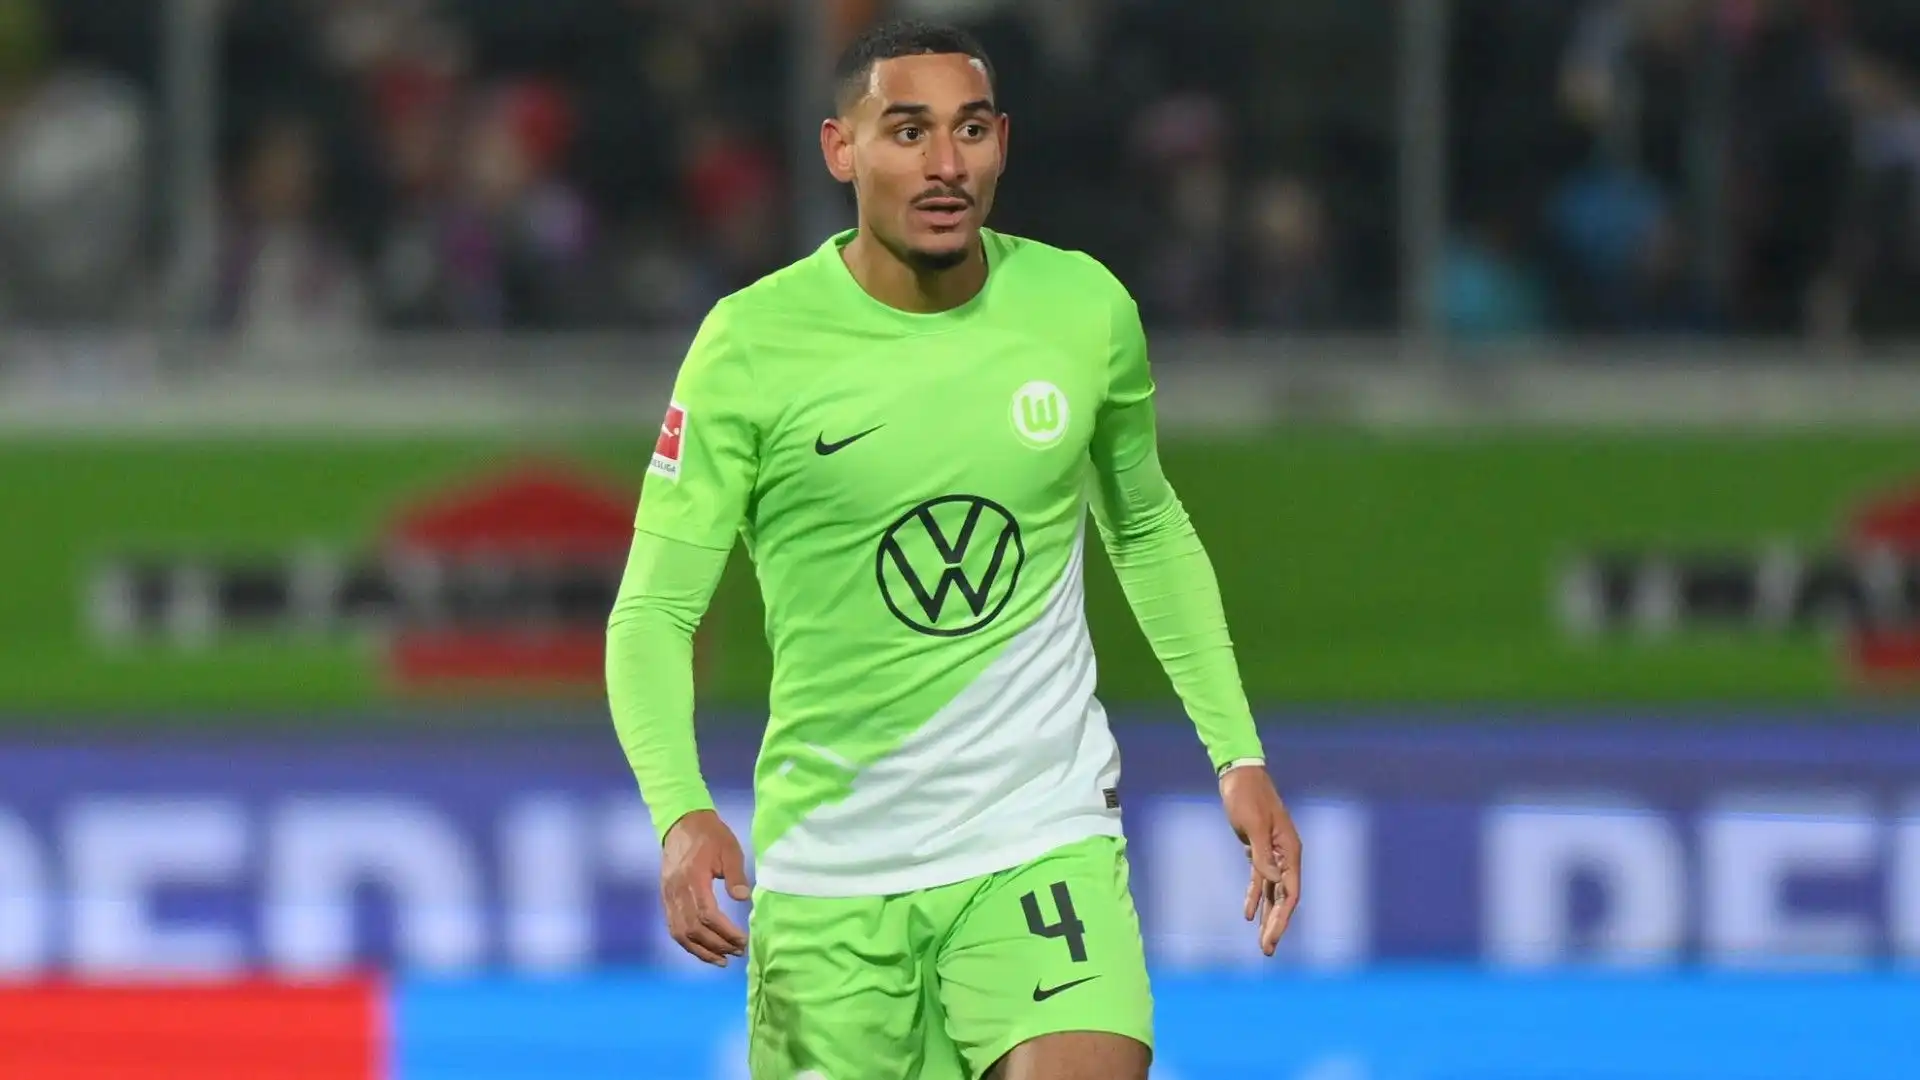 Il difensore ha un contratto con il Wolfsburg fino al 2025